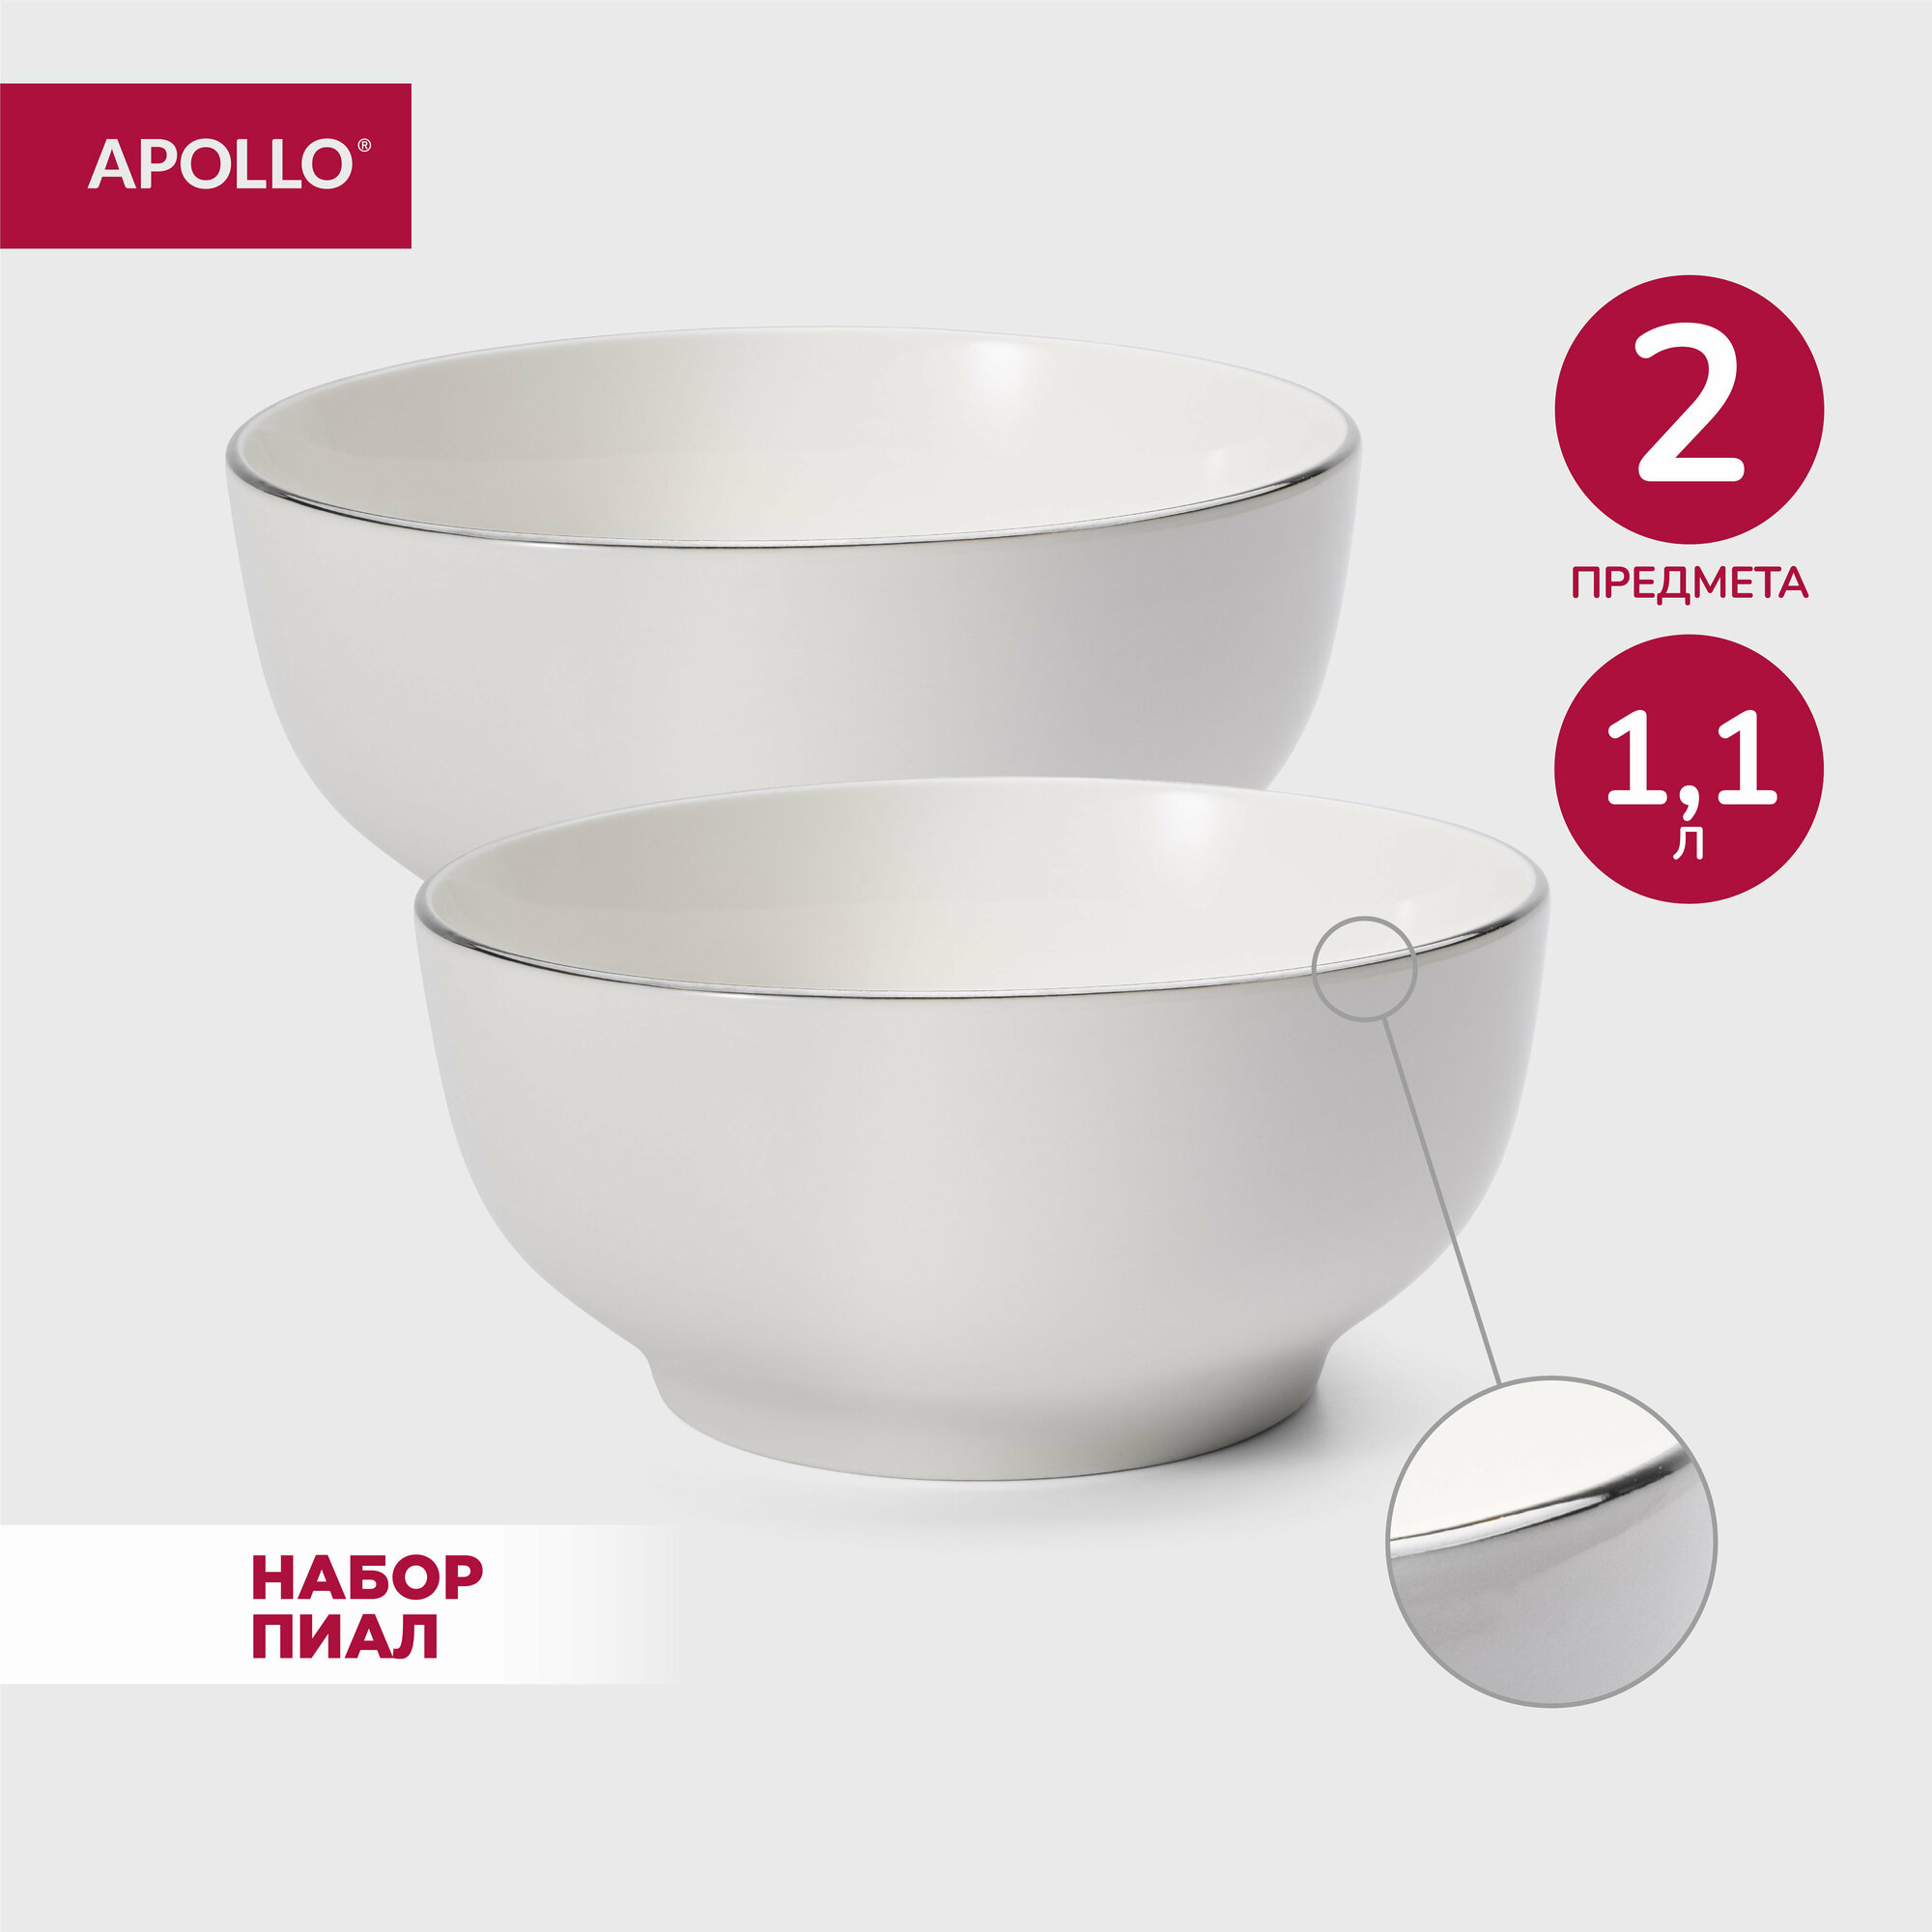 Тарелка глубокая суповая из фарфора набор обеденных тарелок салатник для сервировки фарфоровая посуда Apollo 